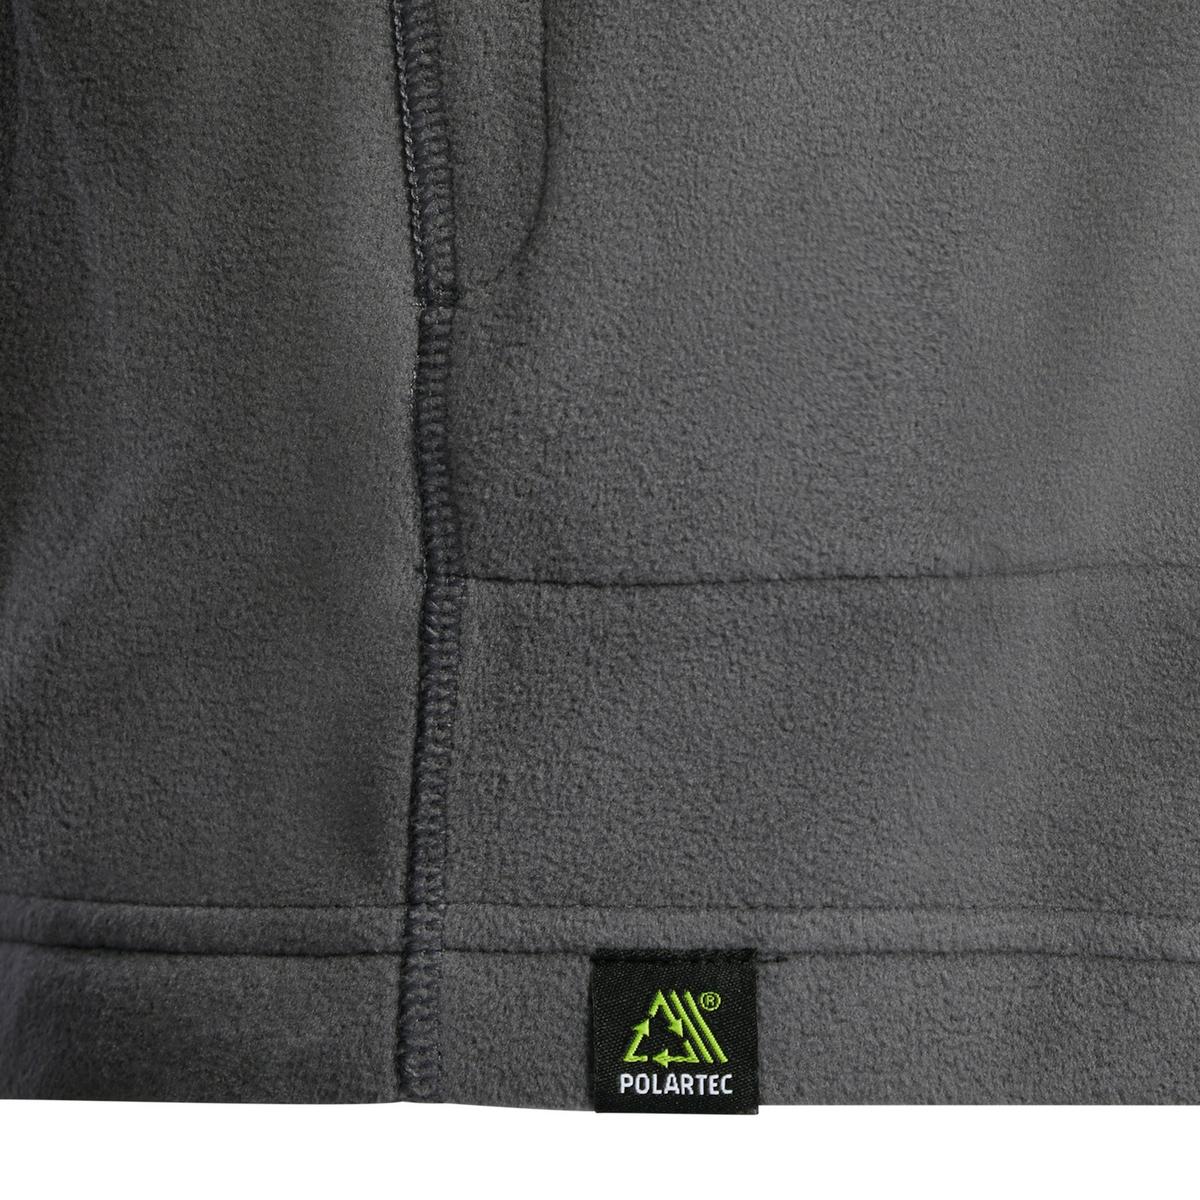 Berghaus Men's Hartsop Eco Full Zip Fleece - Grey Pinstripe